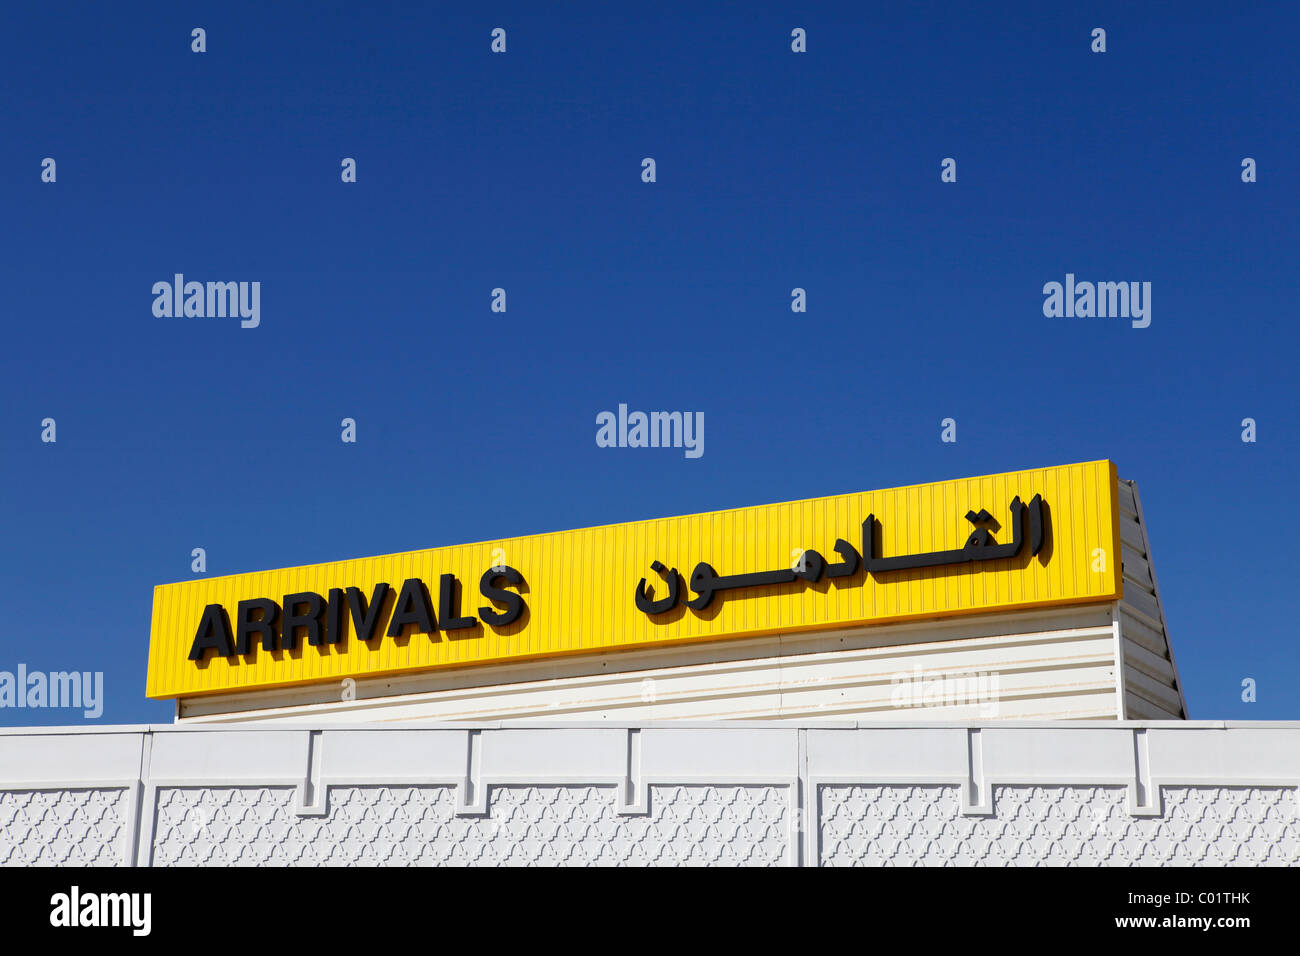 Un signe dit "arrivants" en anglais et arabe. Banque D'Images